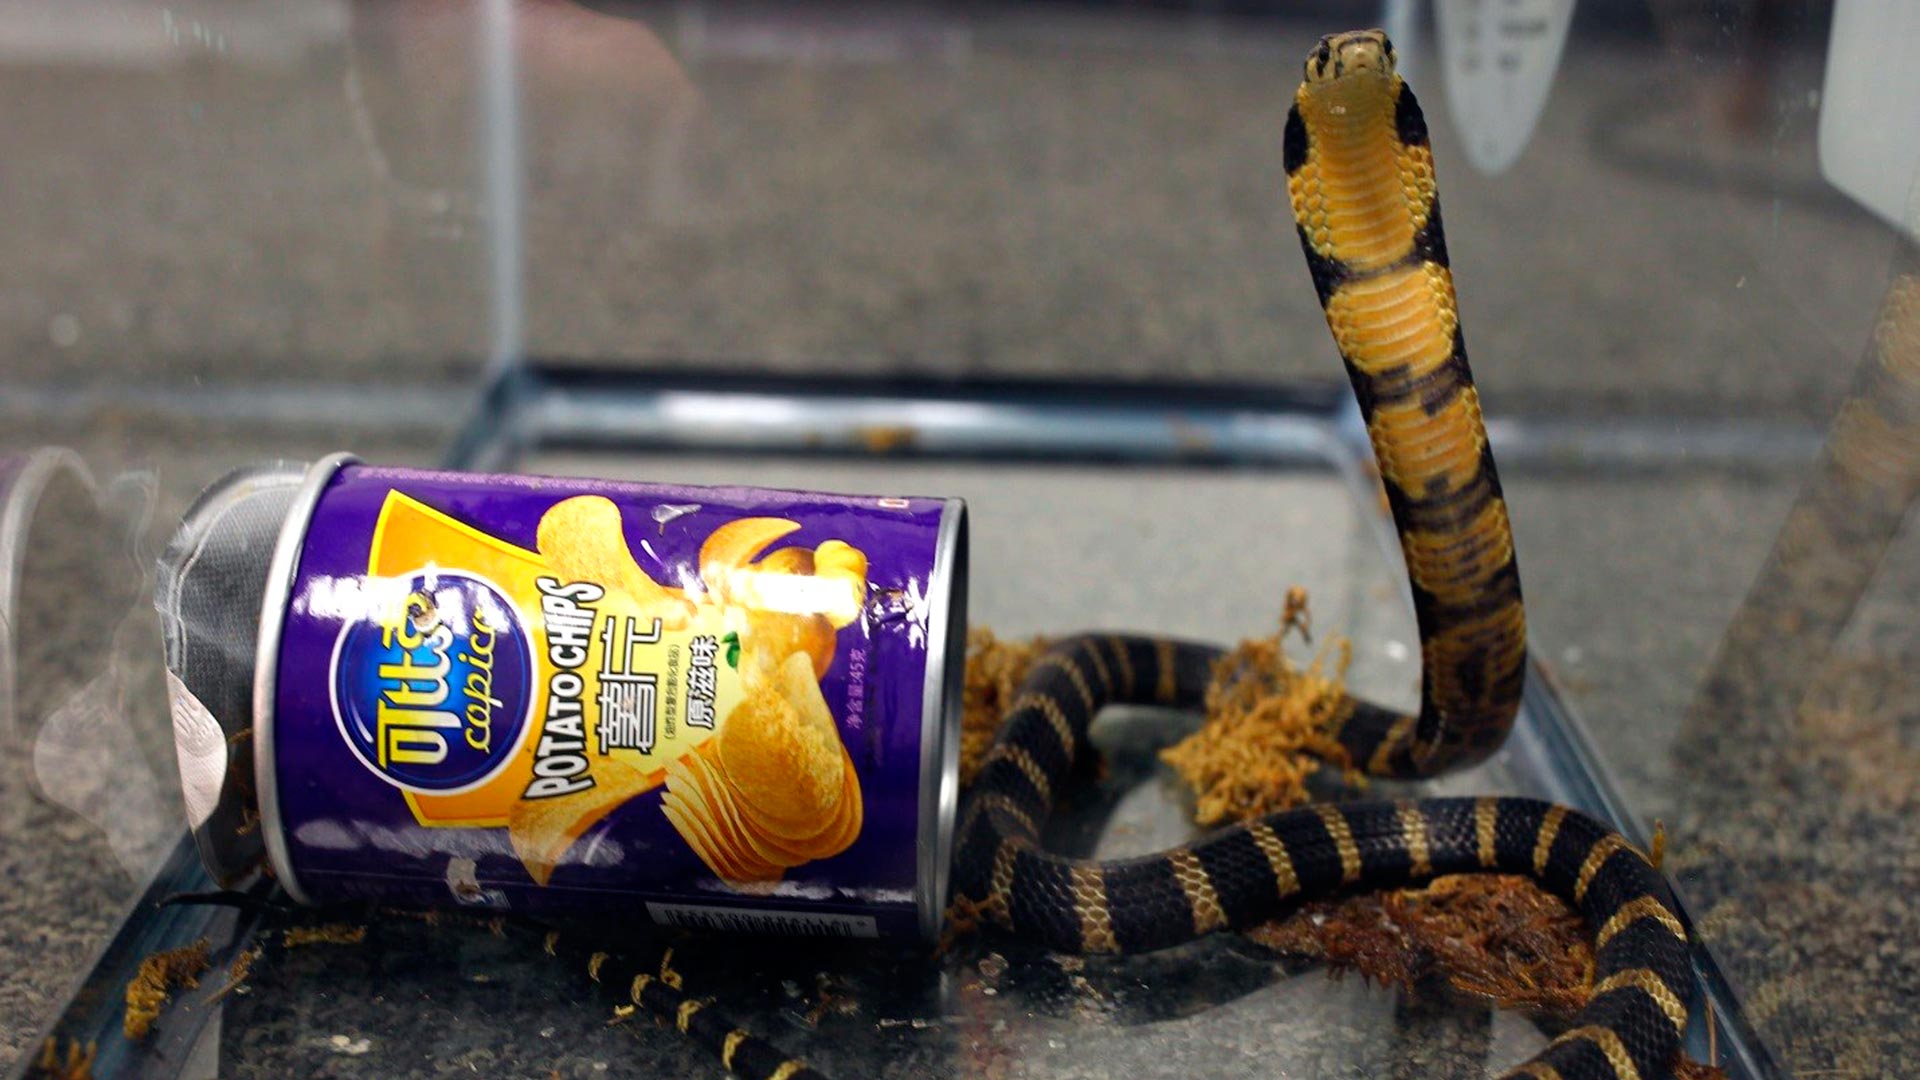 Mortales cobras llegan a EEUU en latas de patatas fritas